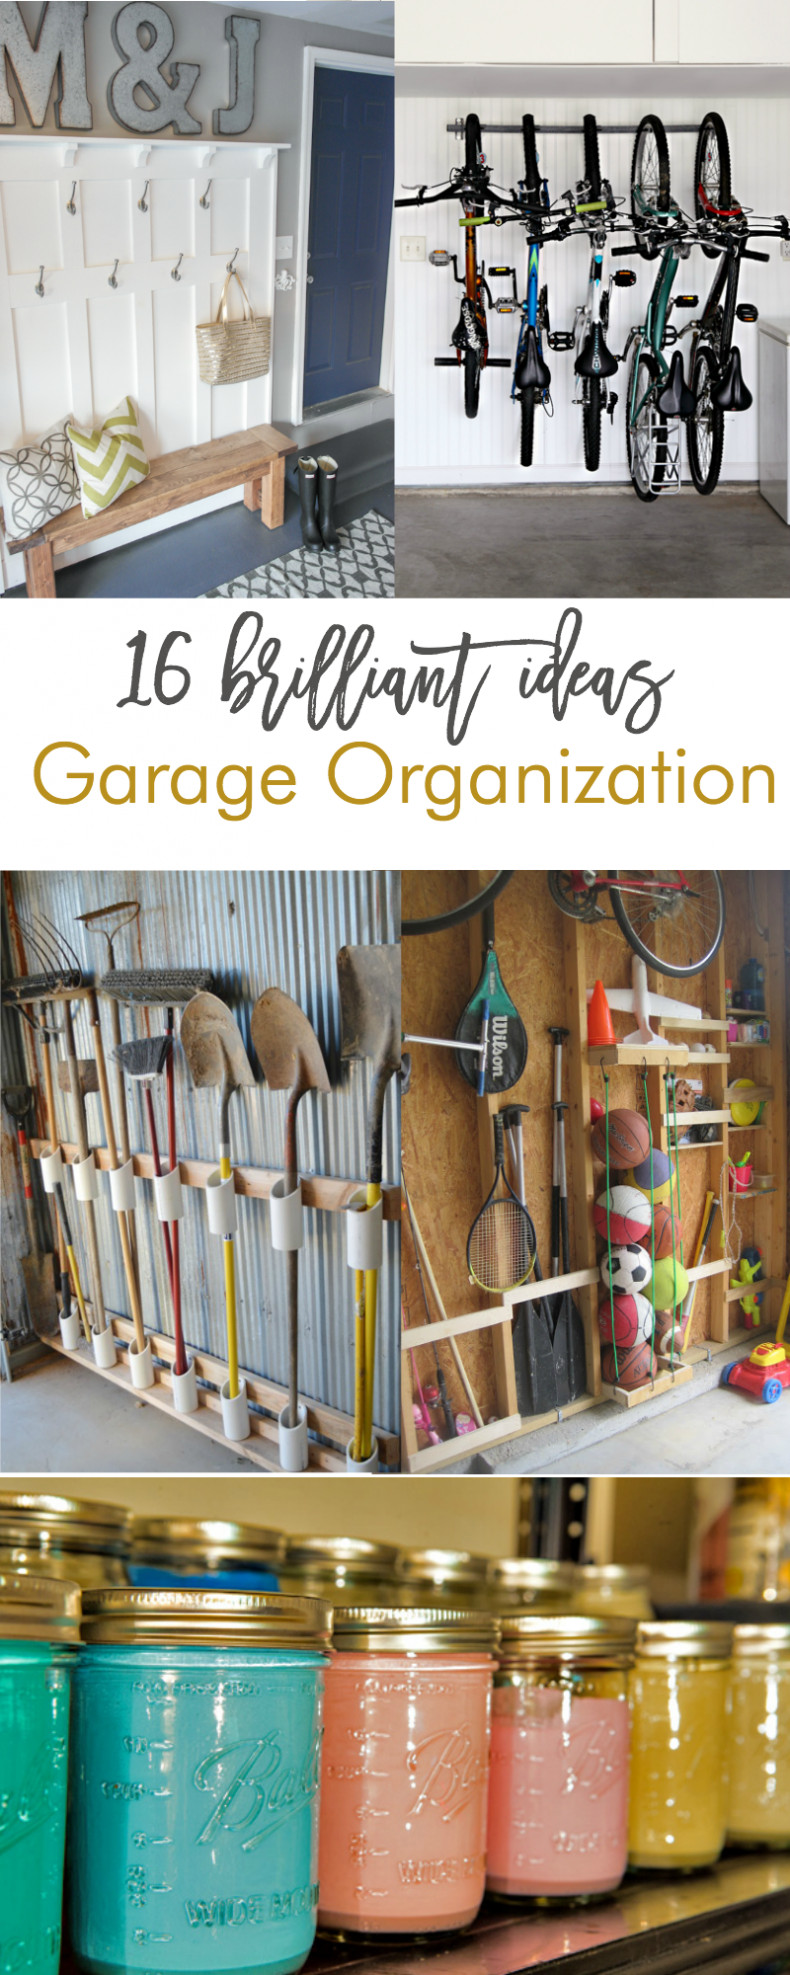 DIY Organizer Ideas
 16 Brilliant DIY Garage Organization Ideas